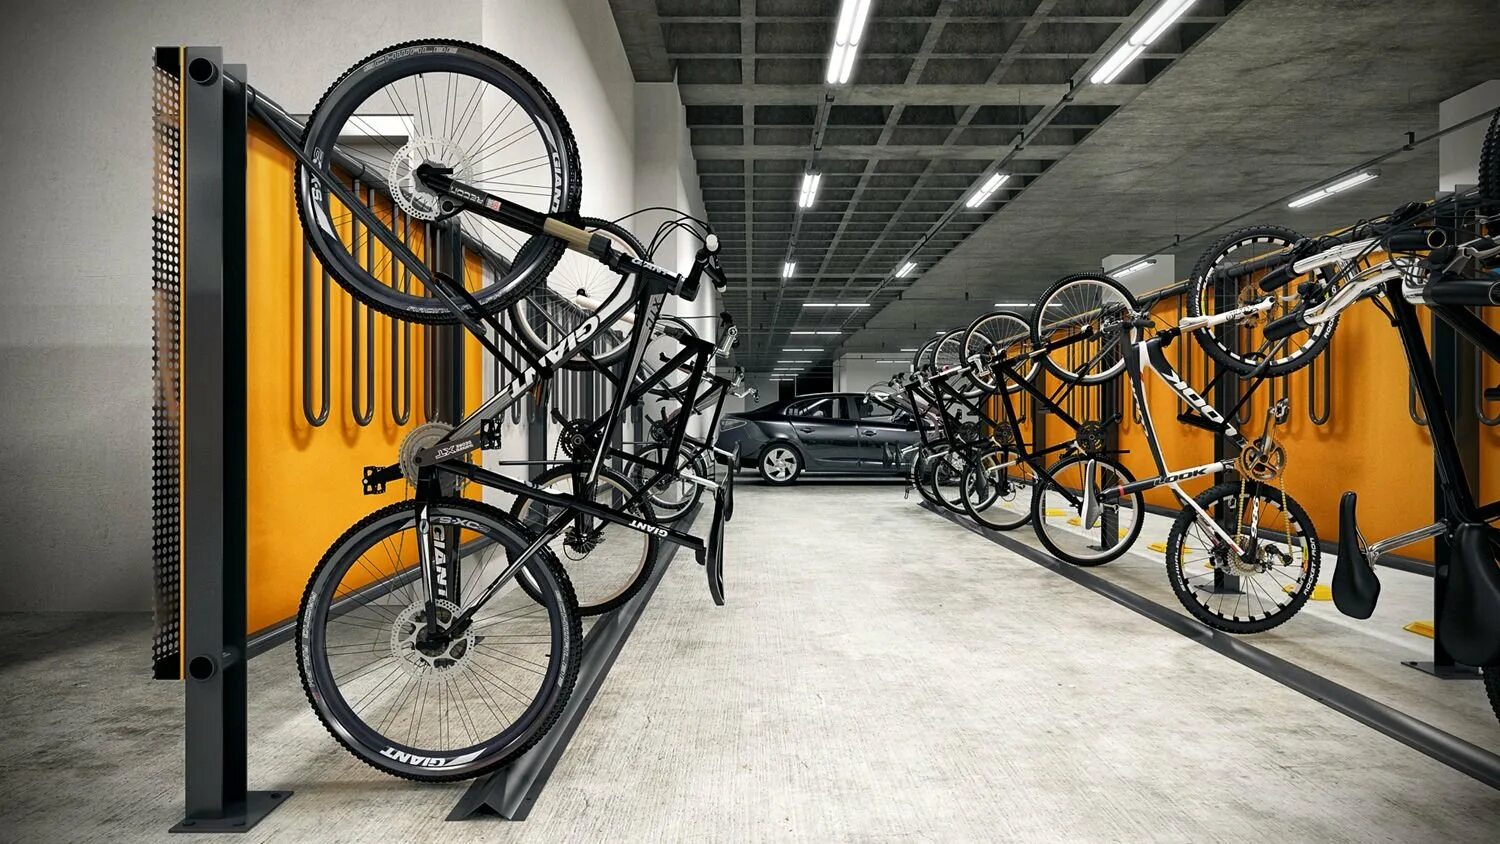 Выкаченный велосипед. Eight egh120 велопарковка. Парковка для велосипедов. Крытые парковки для велосипедов. Место для хранения велосипеда.